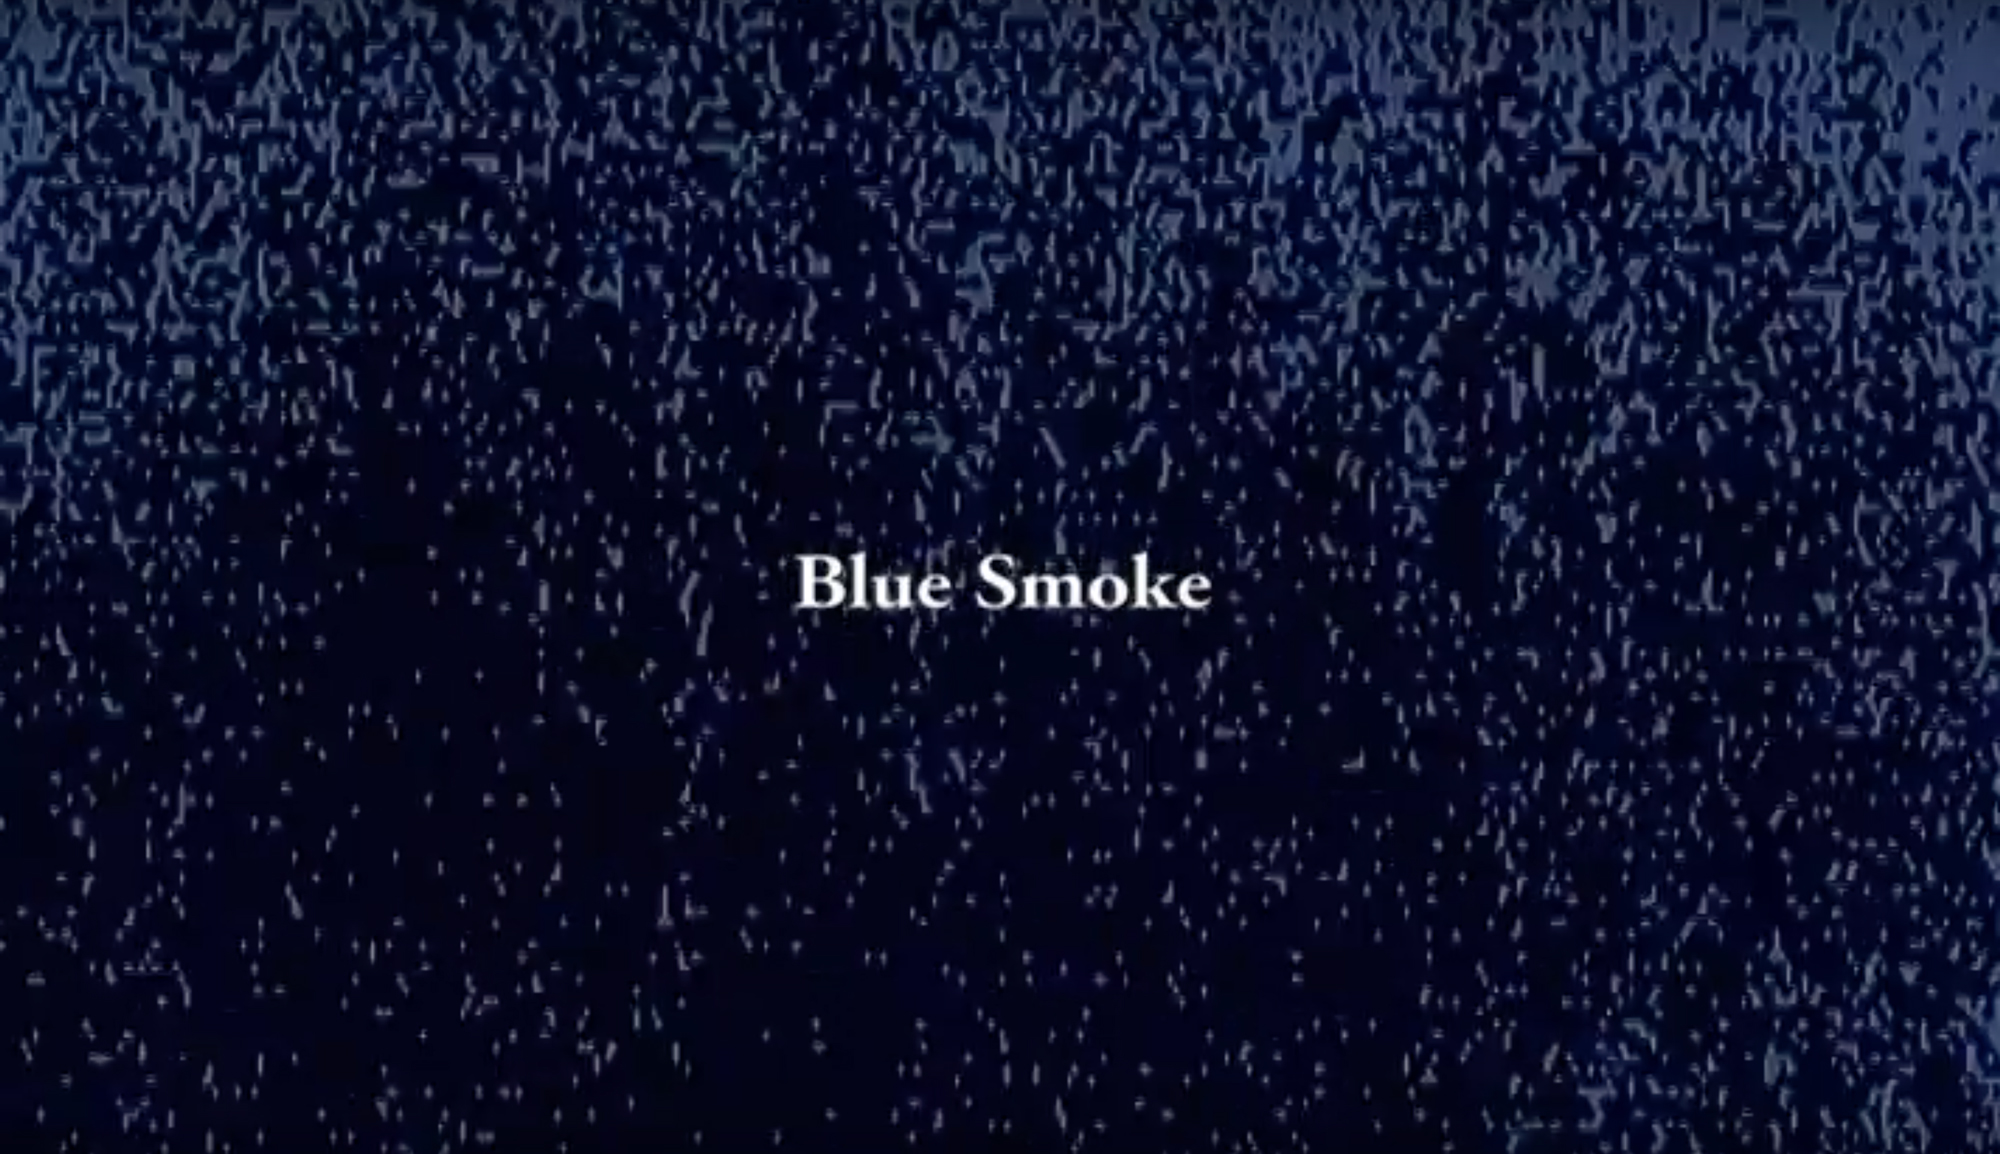 Daylight - Blue Smoke cover